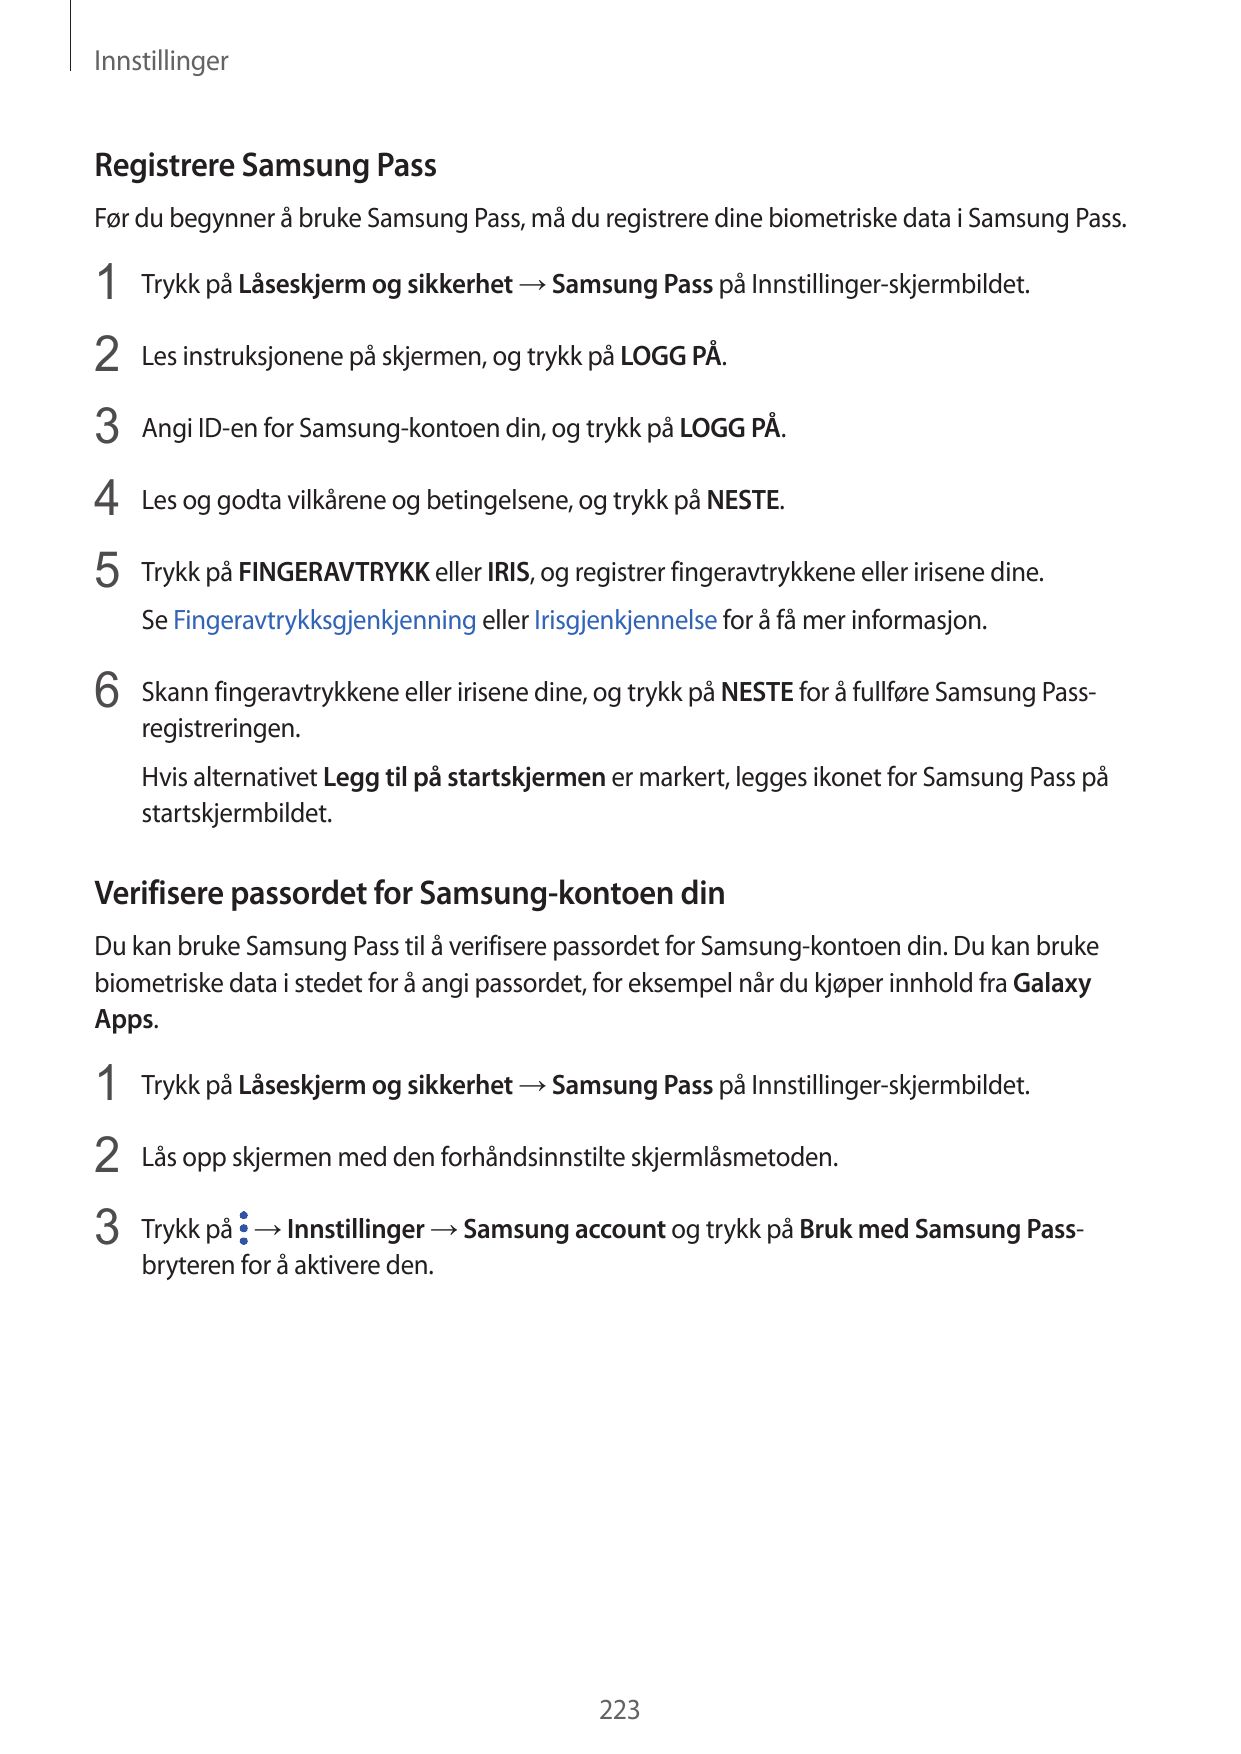 InnstillingerRegistrere Samsung PassFør du begynner å bruke Samsung Pass, må du registrere dine biometriske data i Samsung Pass.